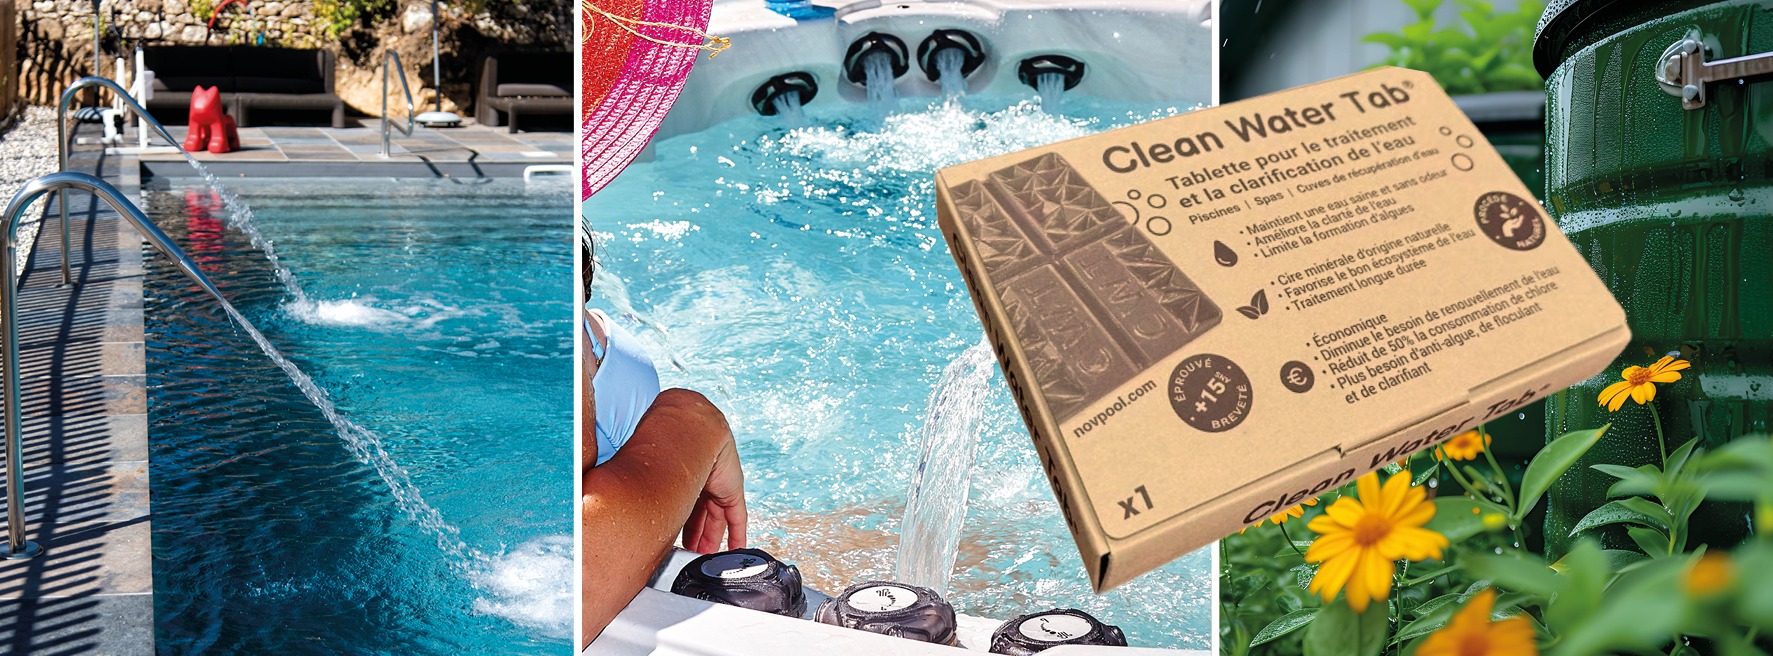 Clean Water Tab, tablette pour le traitement des eaux de piscine et de spa